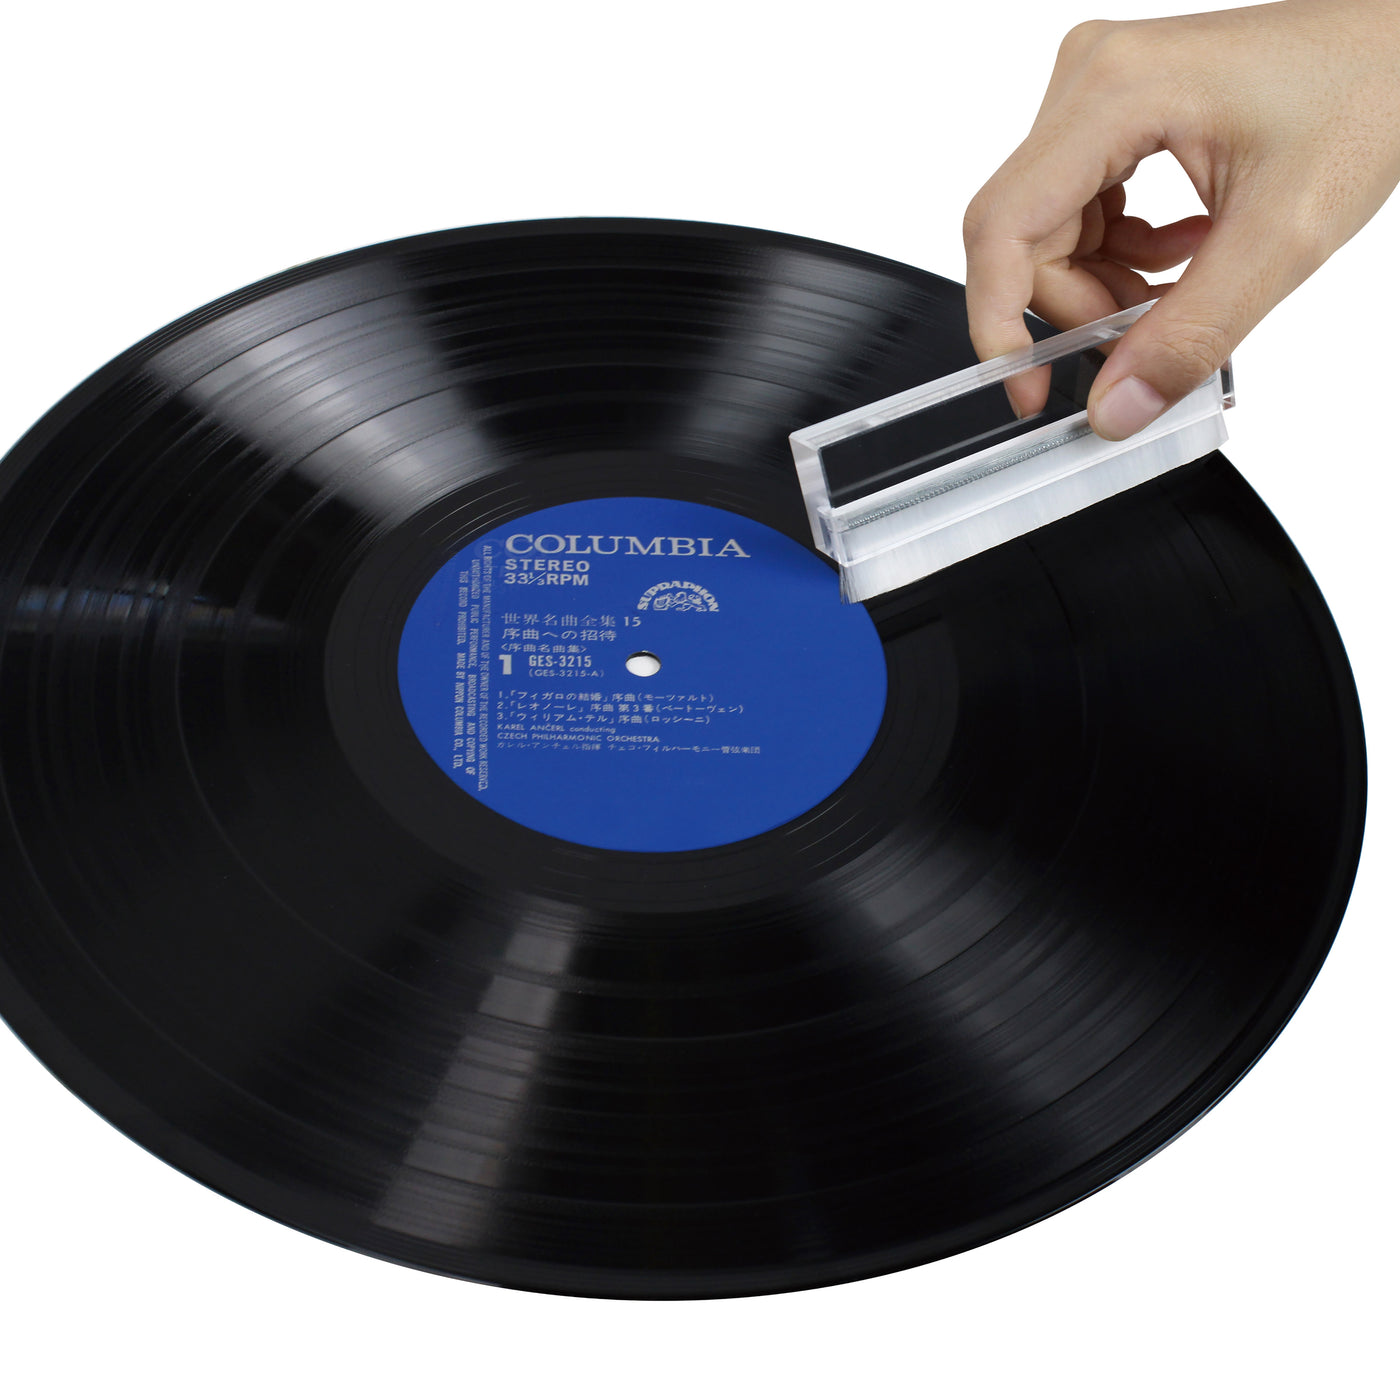 Lenco TTA-12IN1PRO - Set d'accessoires professionnel 12-en-1 pour platine vinyle et kit de nettoyage pour disques vinyles - Argent